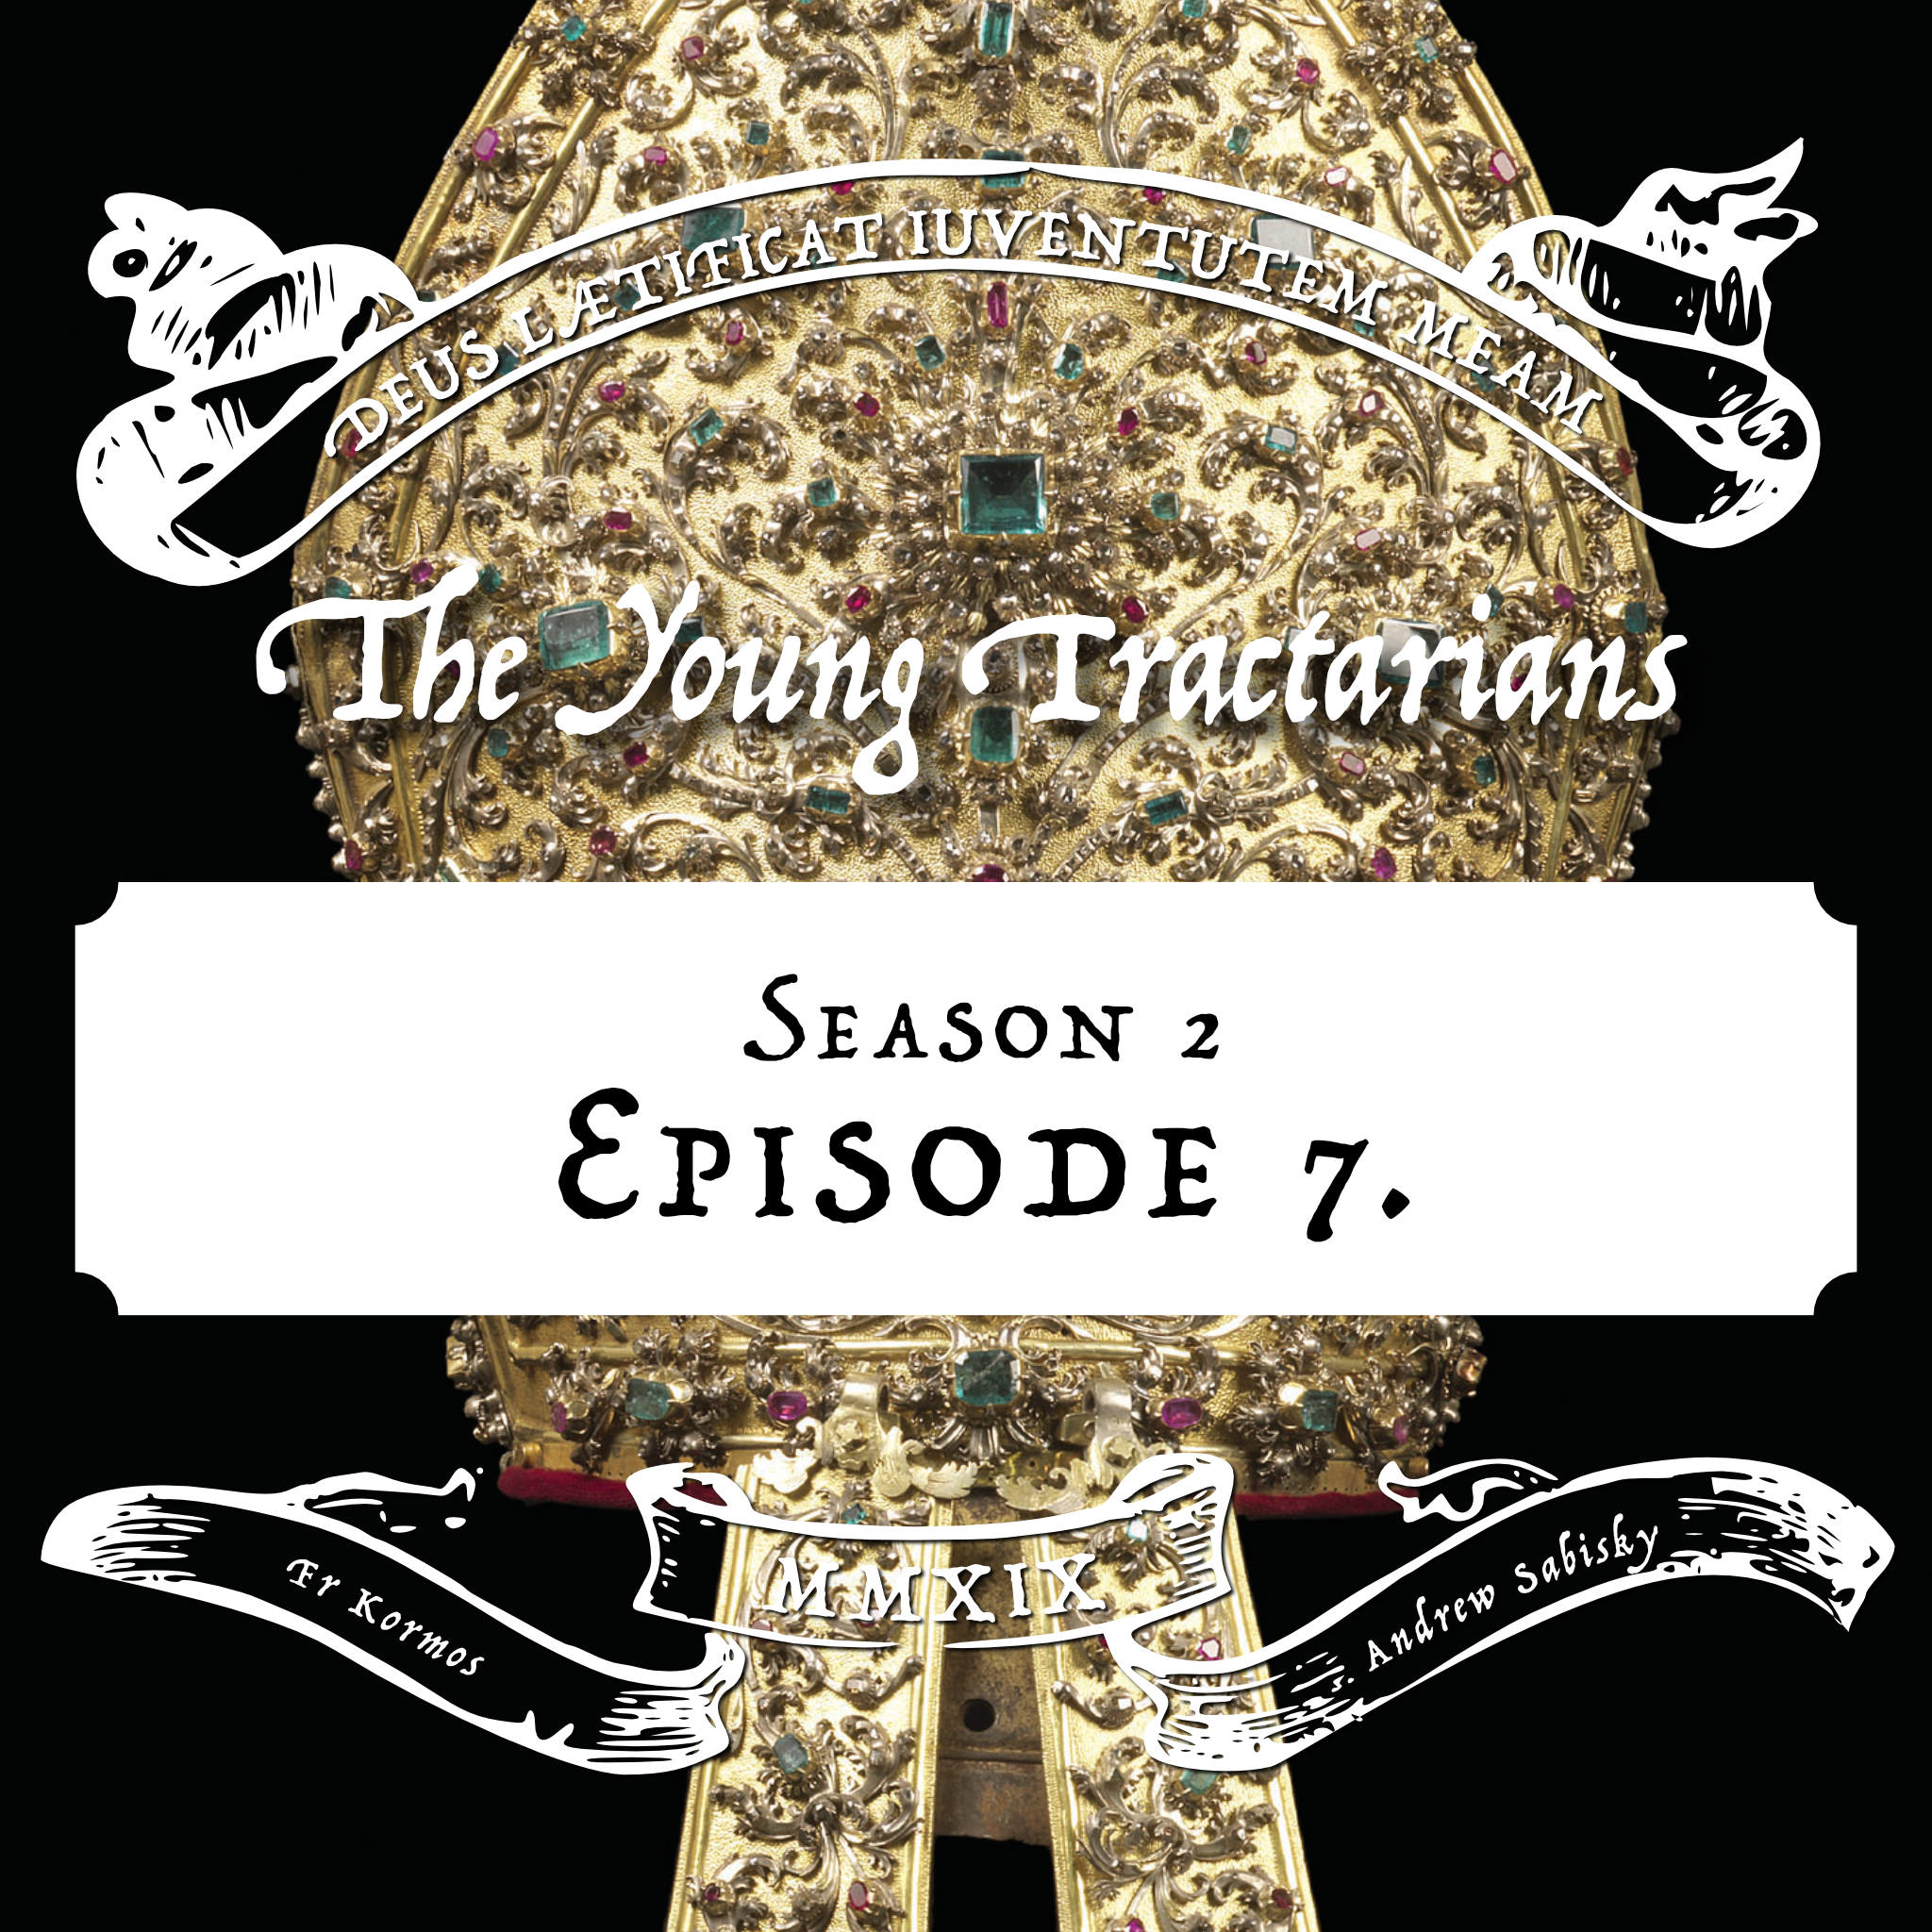 Season 2, Episode 7